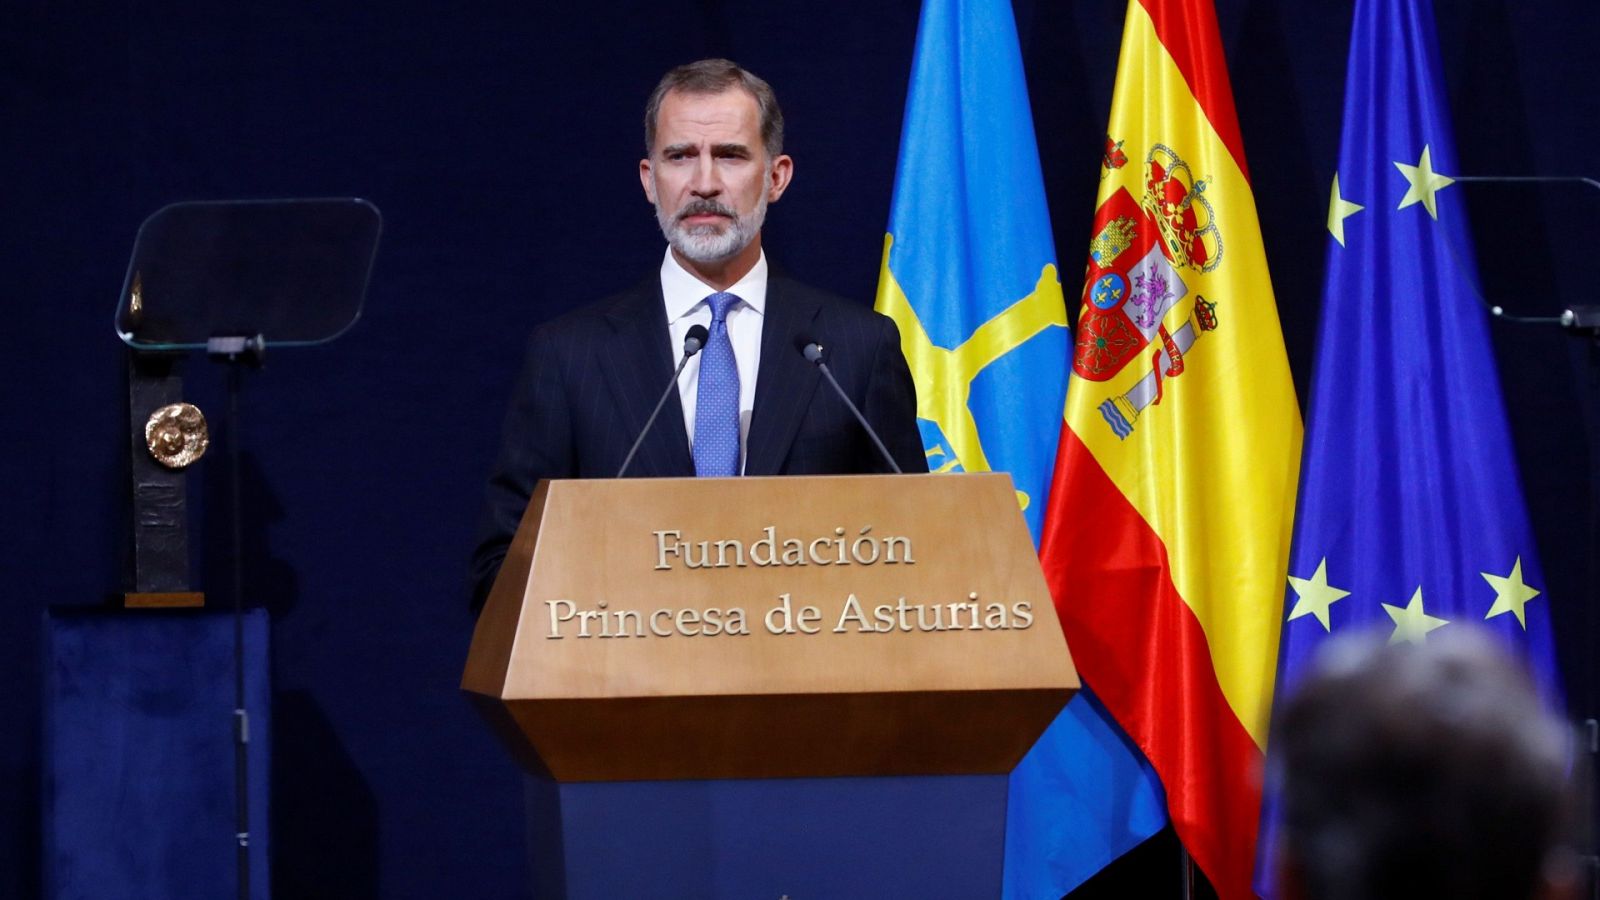 Premios Princesa de Asturias 2020: discurso del Rey Felipe VI 